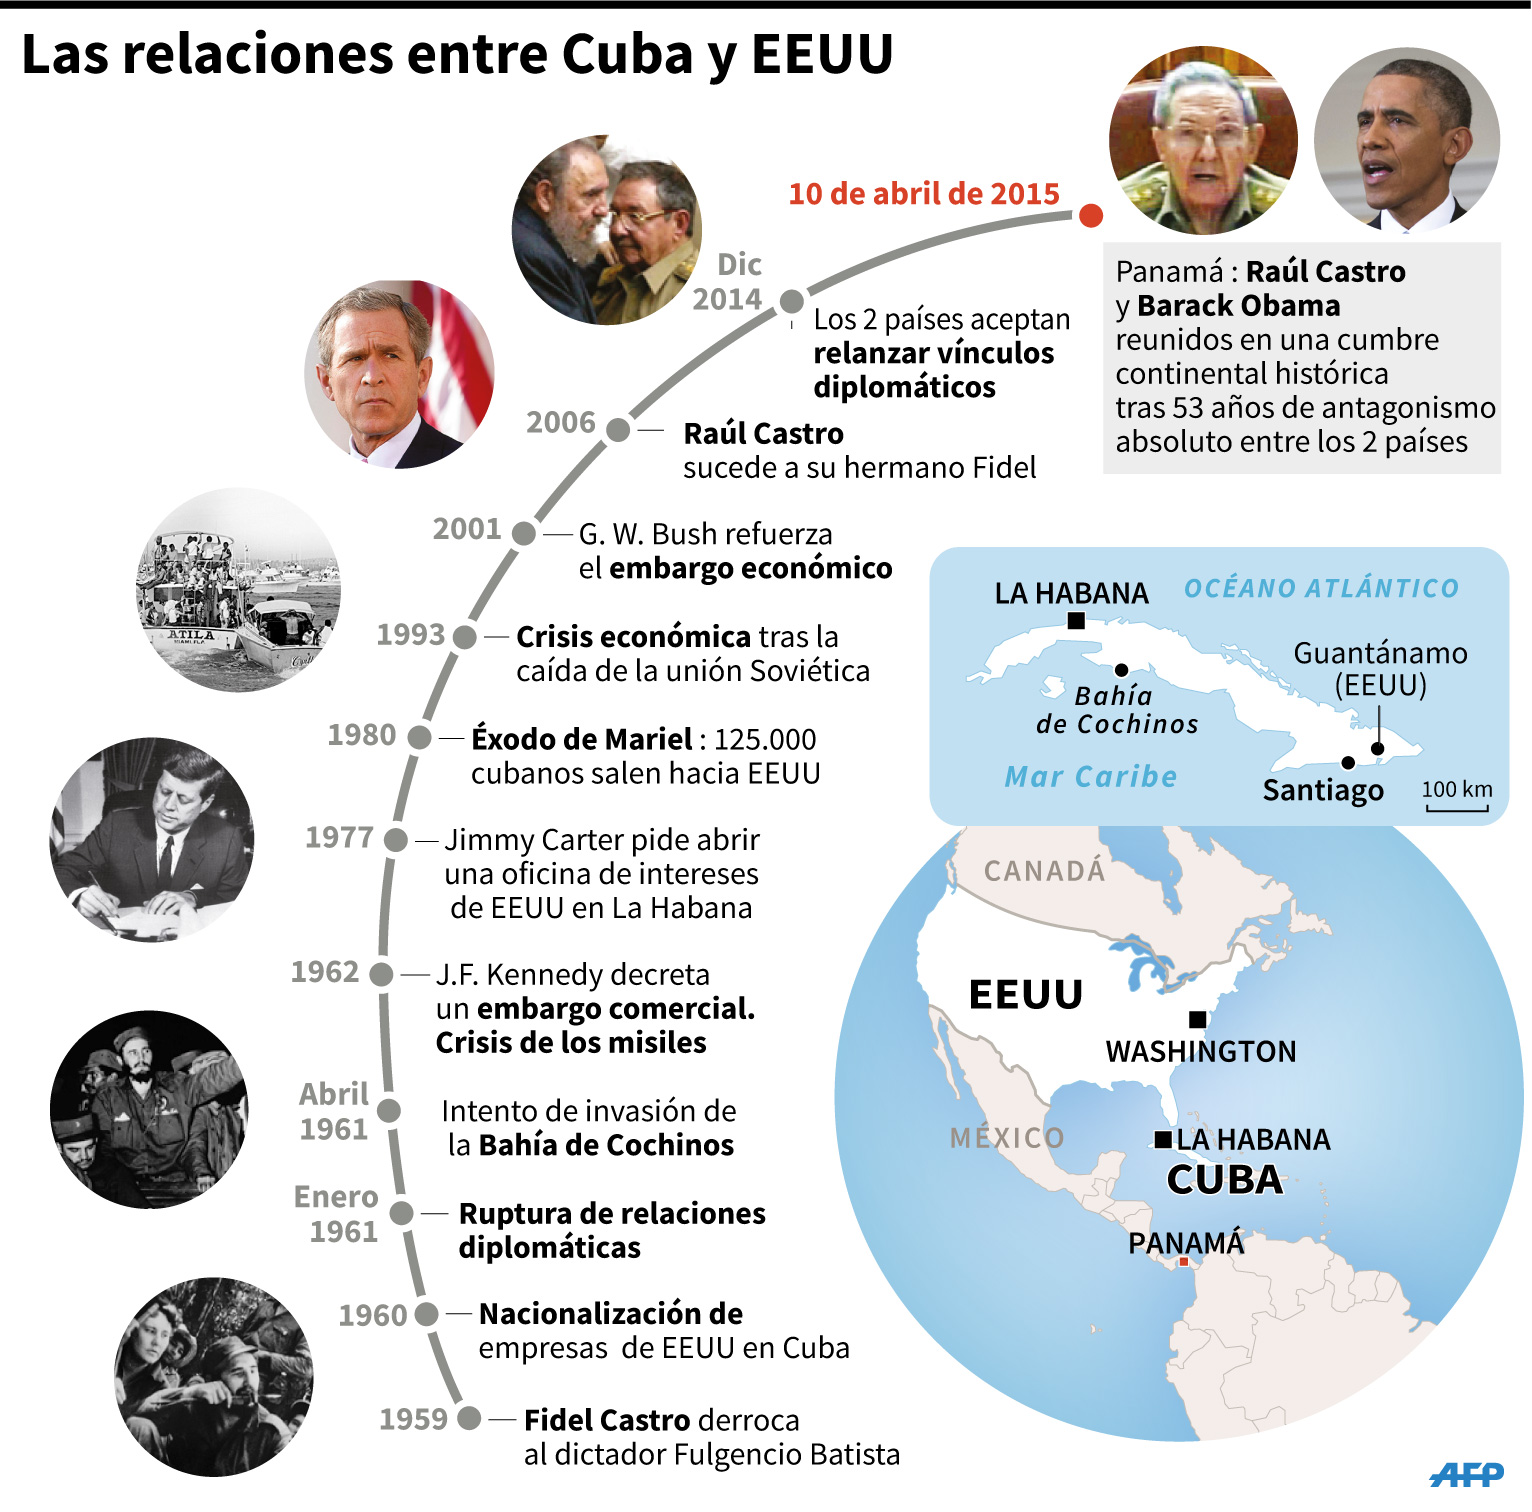 Obama y Raúl Castro en histórico cara a cara en Cumbre de las Américas